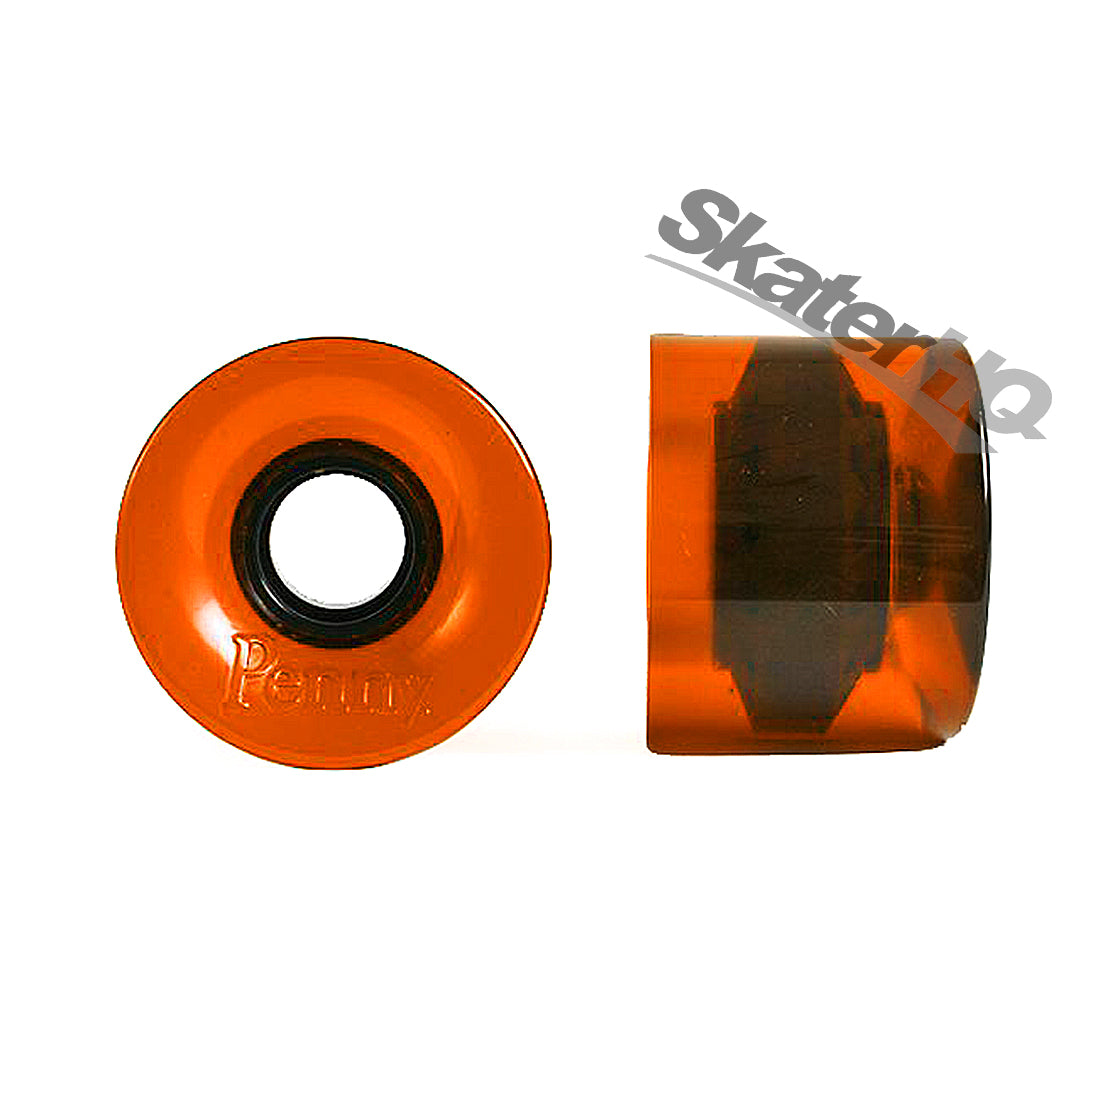 Penny 59mm 83a Wheels - Clear Orange Skateboard Wheels